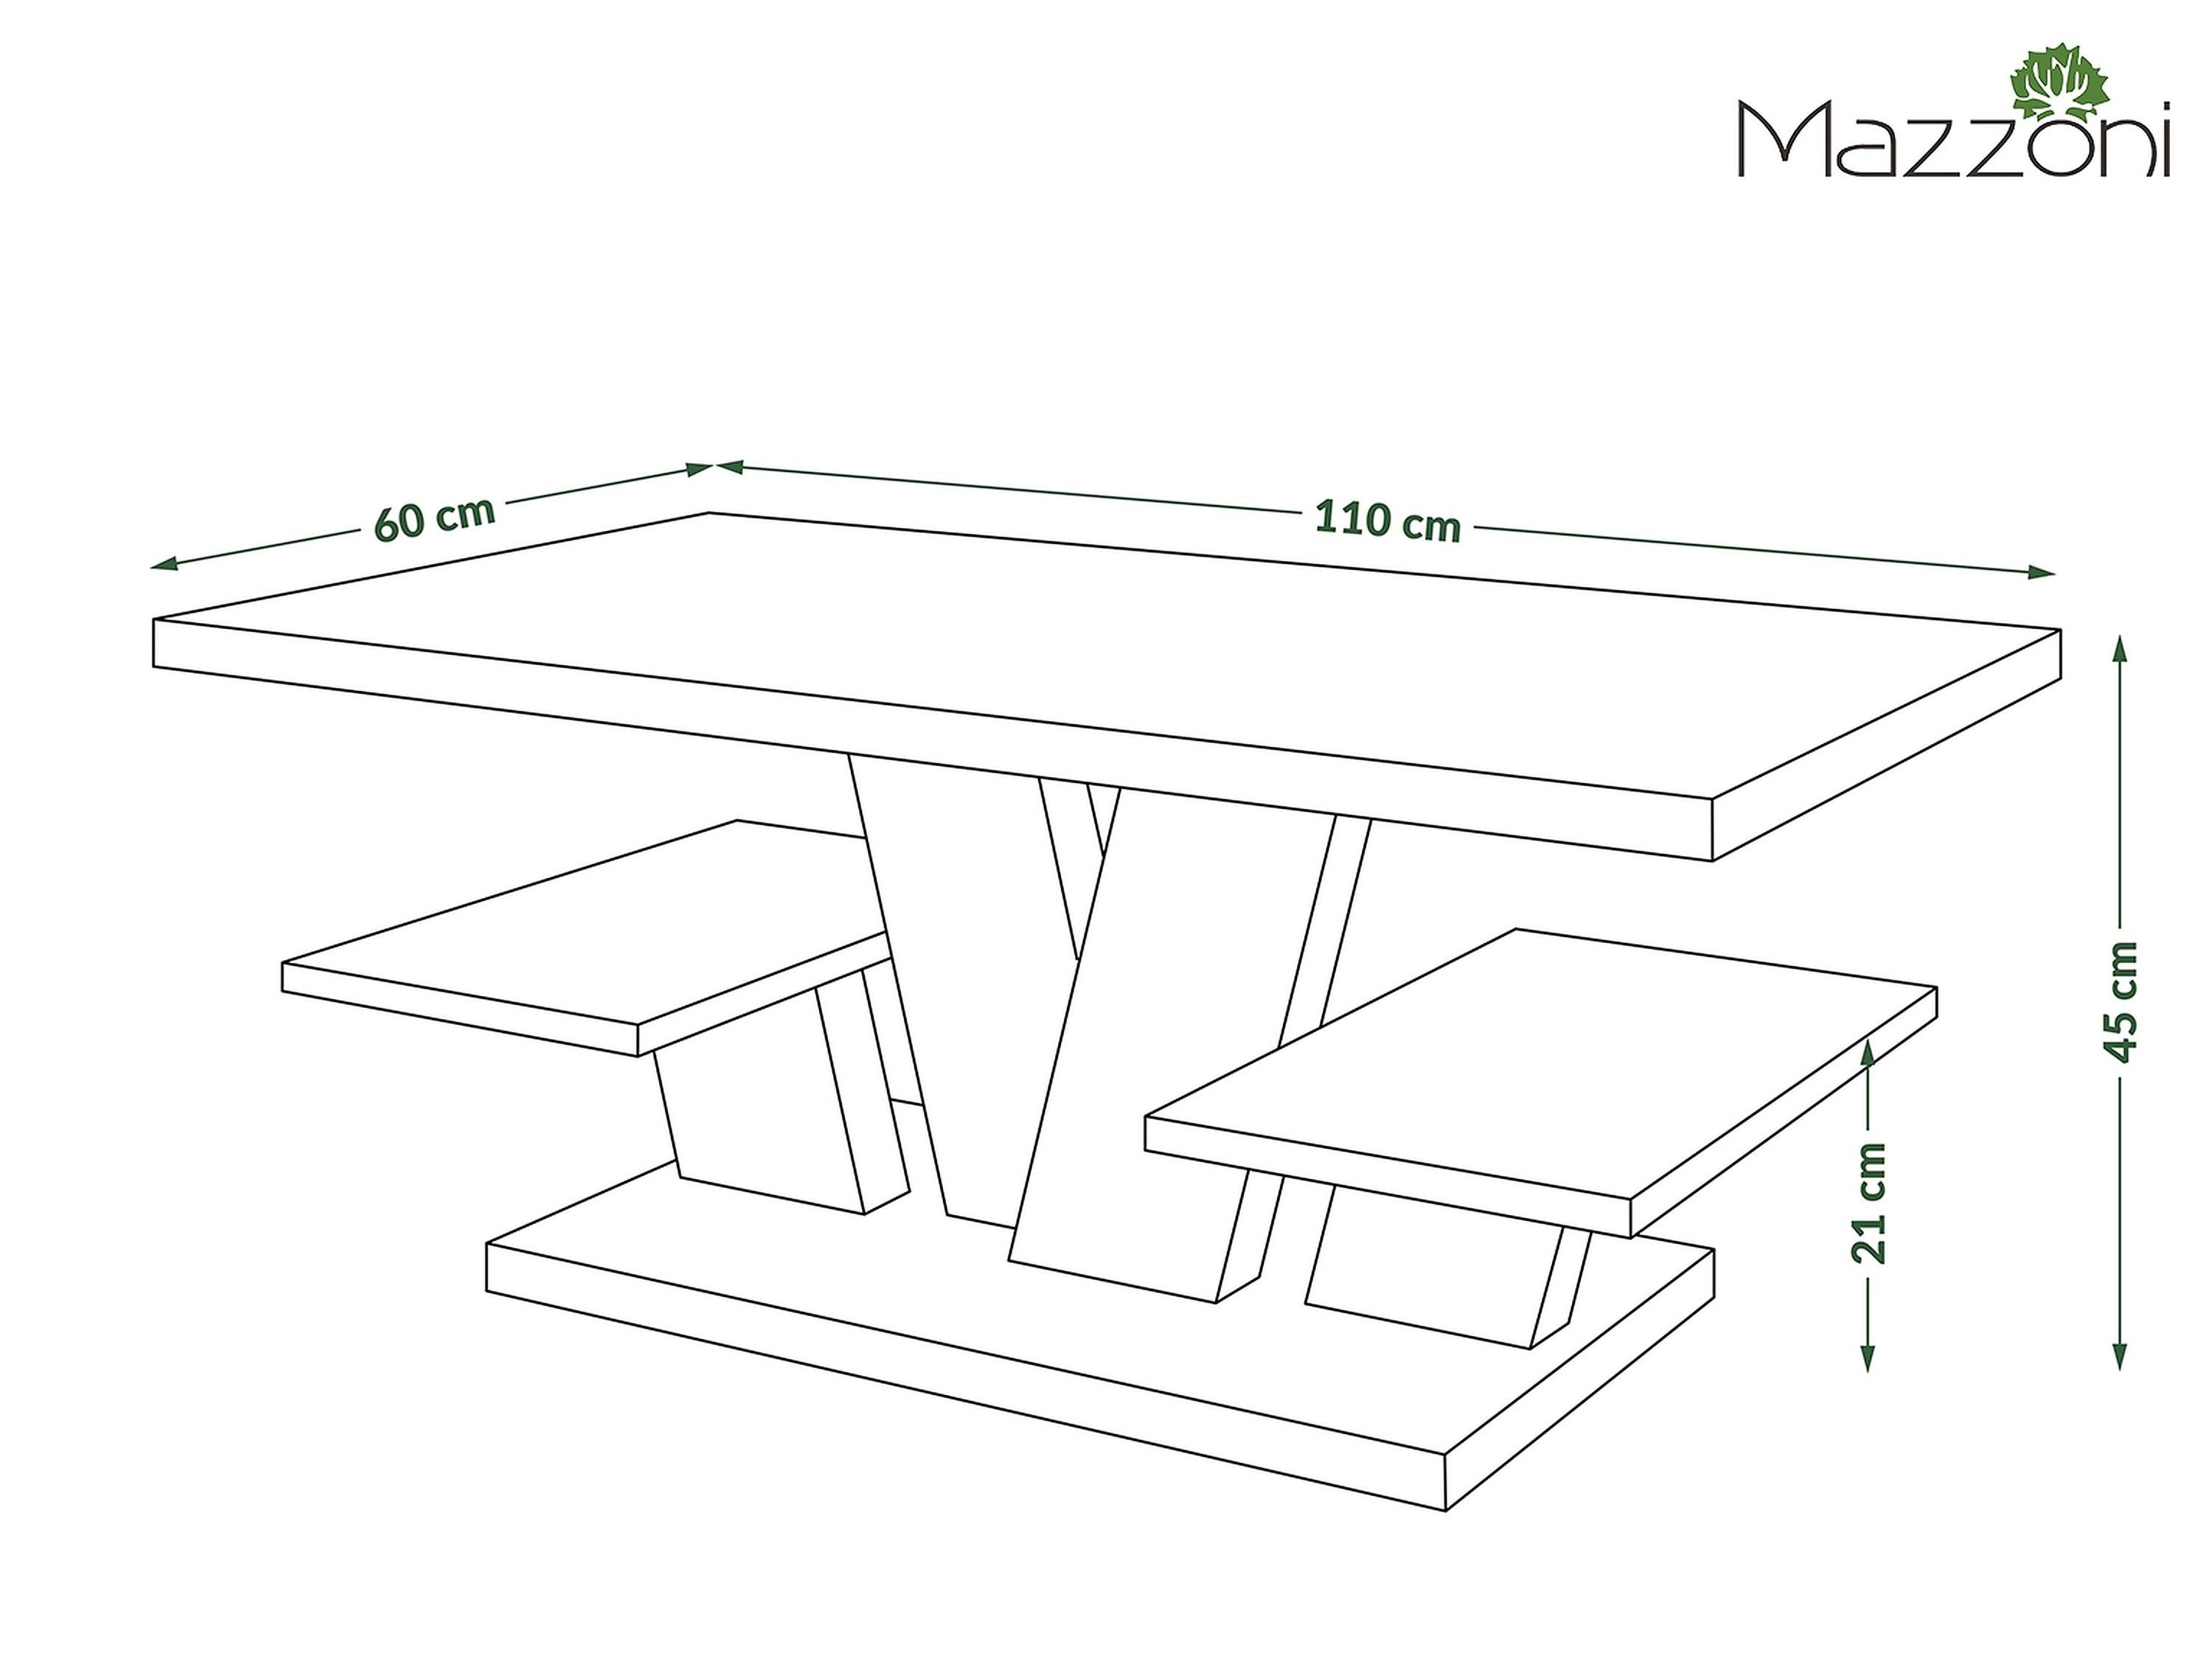 Viva mit Weiß matt Hochglanz Ablagefläche Couchtisch / Tisch cm 110x60x45 Wohnzimmertisch Schwarz designimpex Design